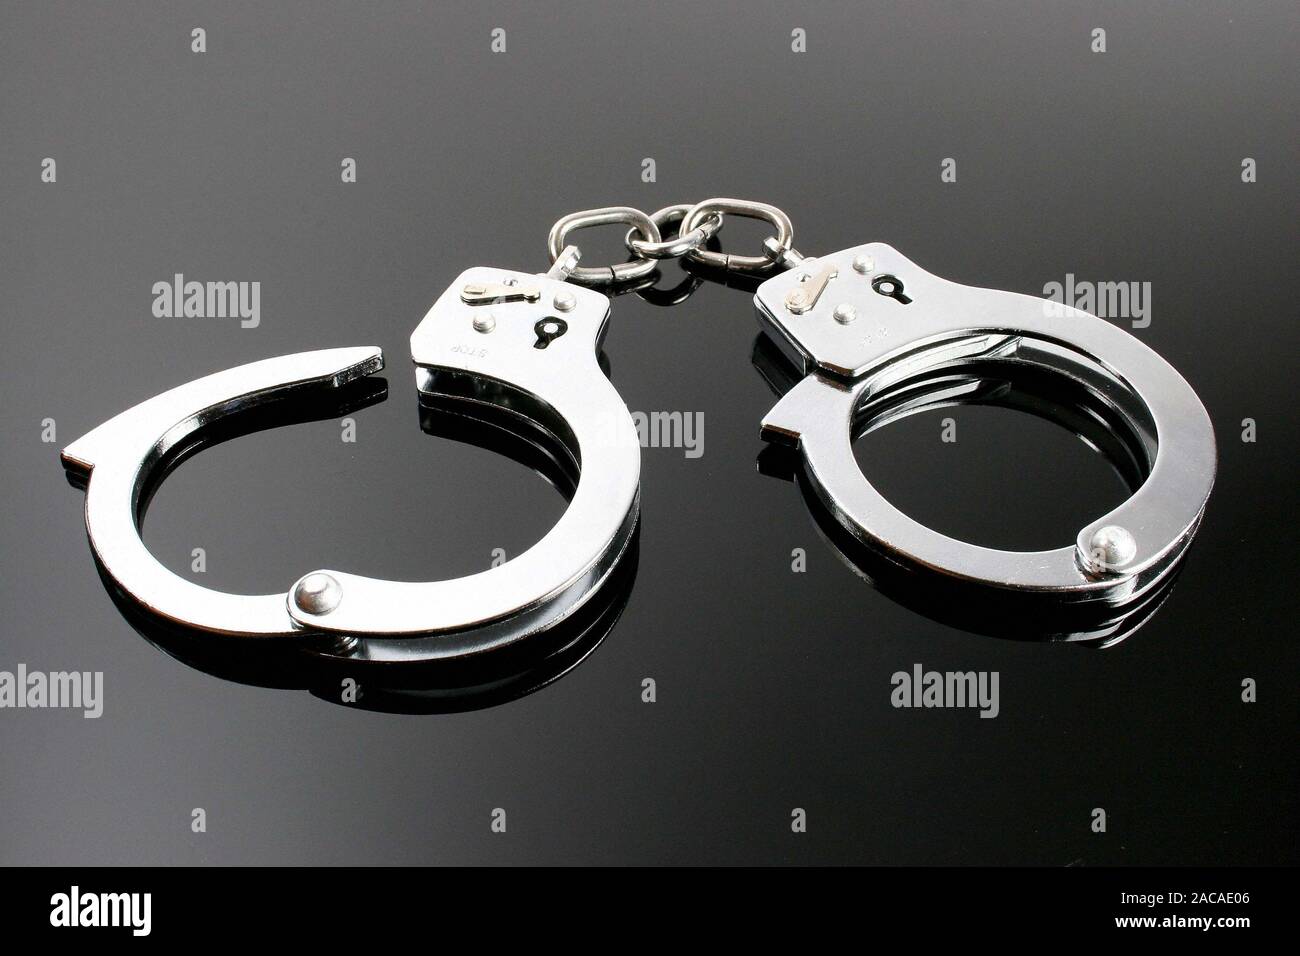 Handchells - hand cuffs Stock Photo